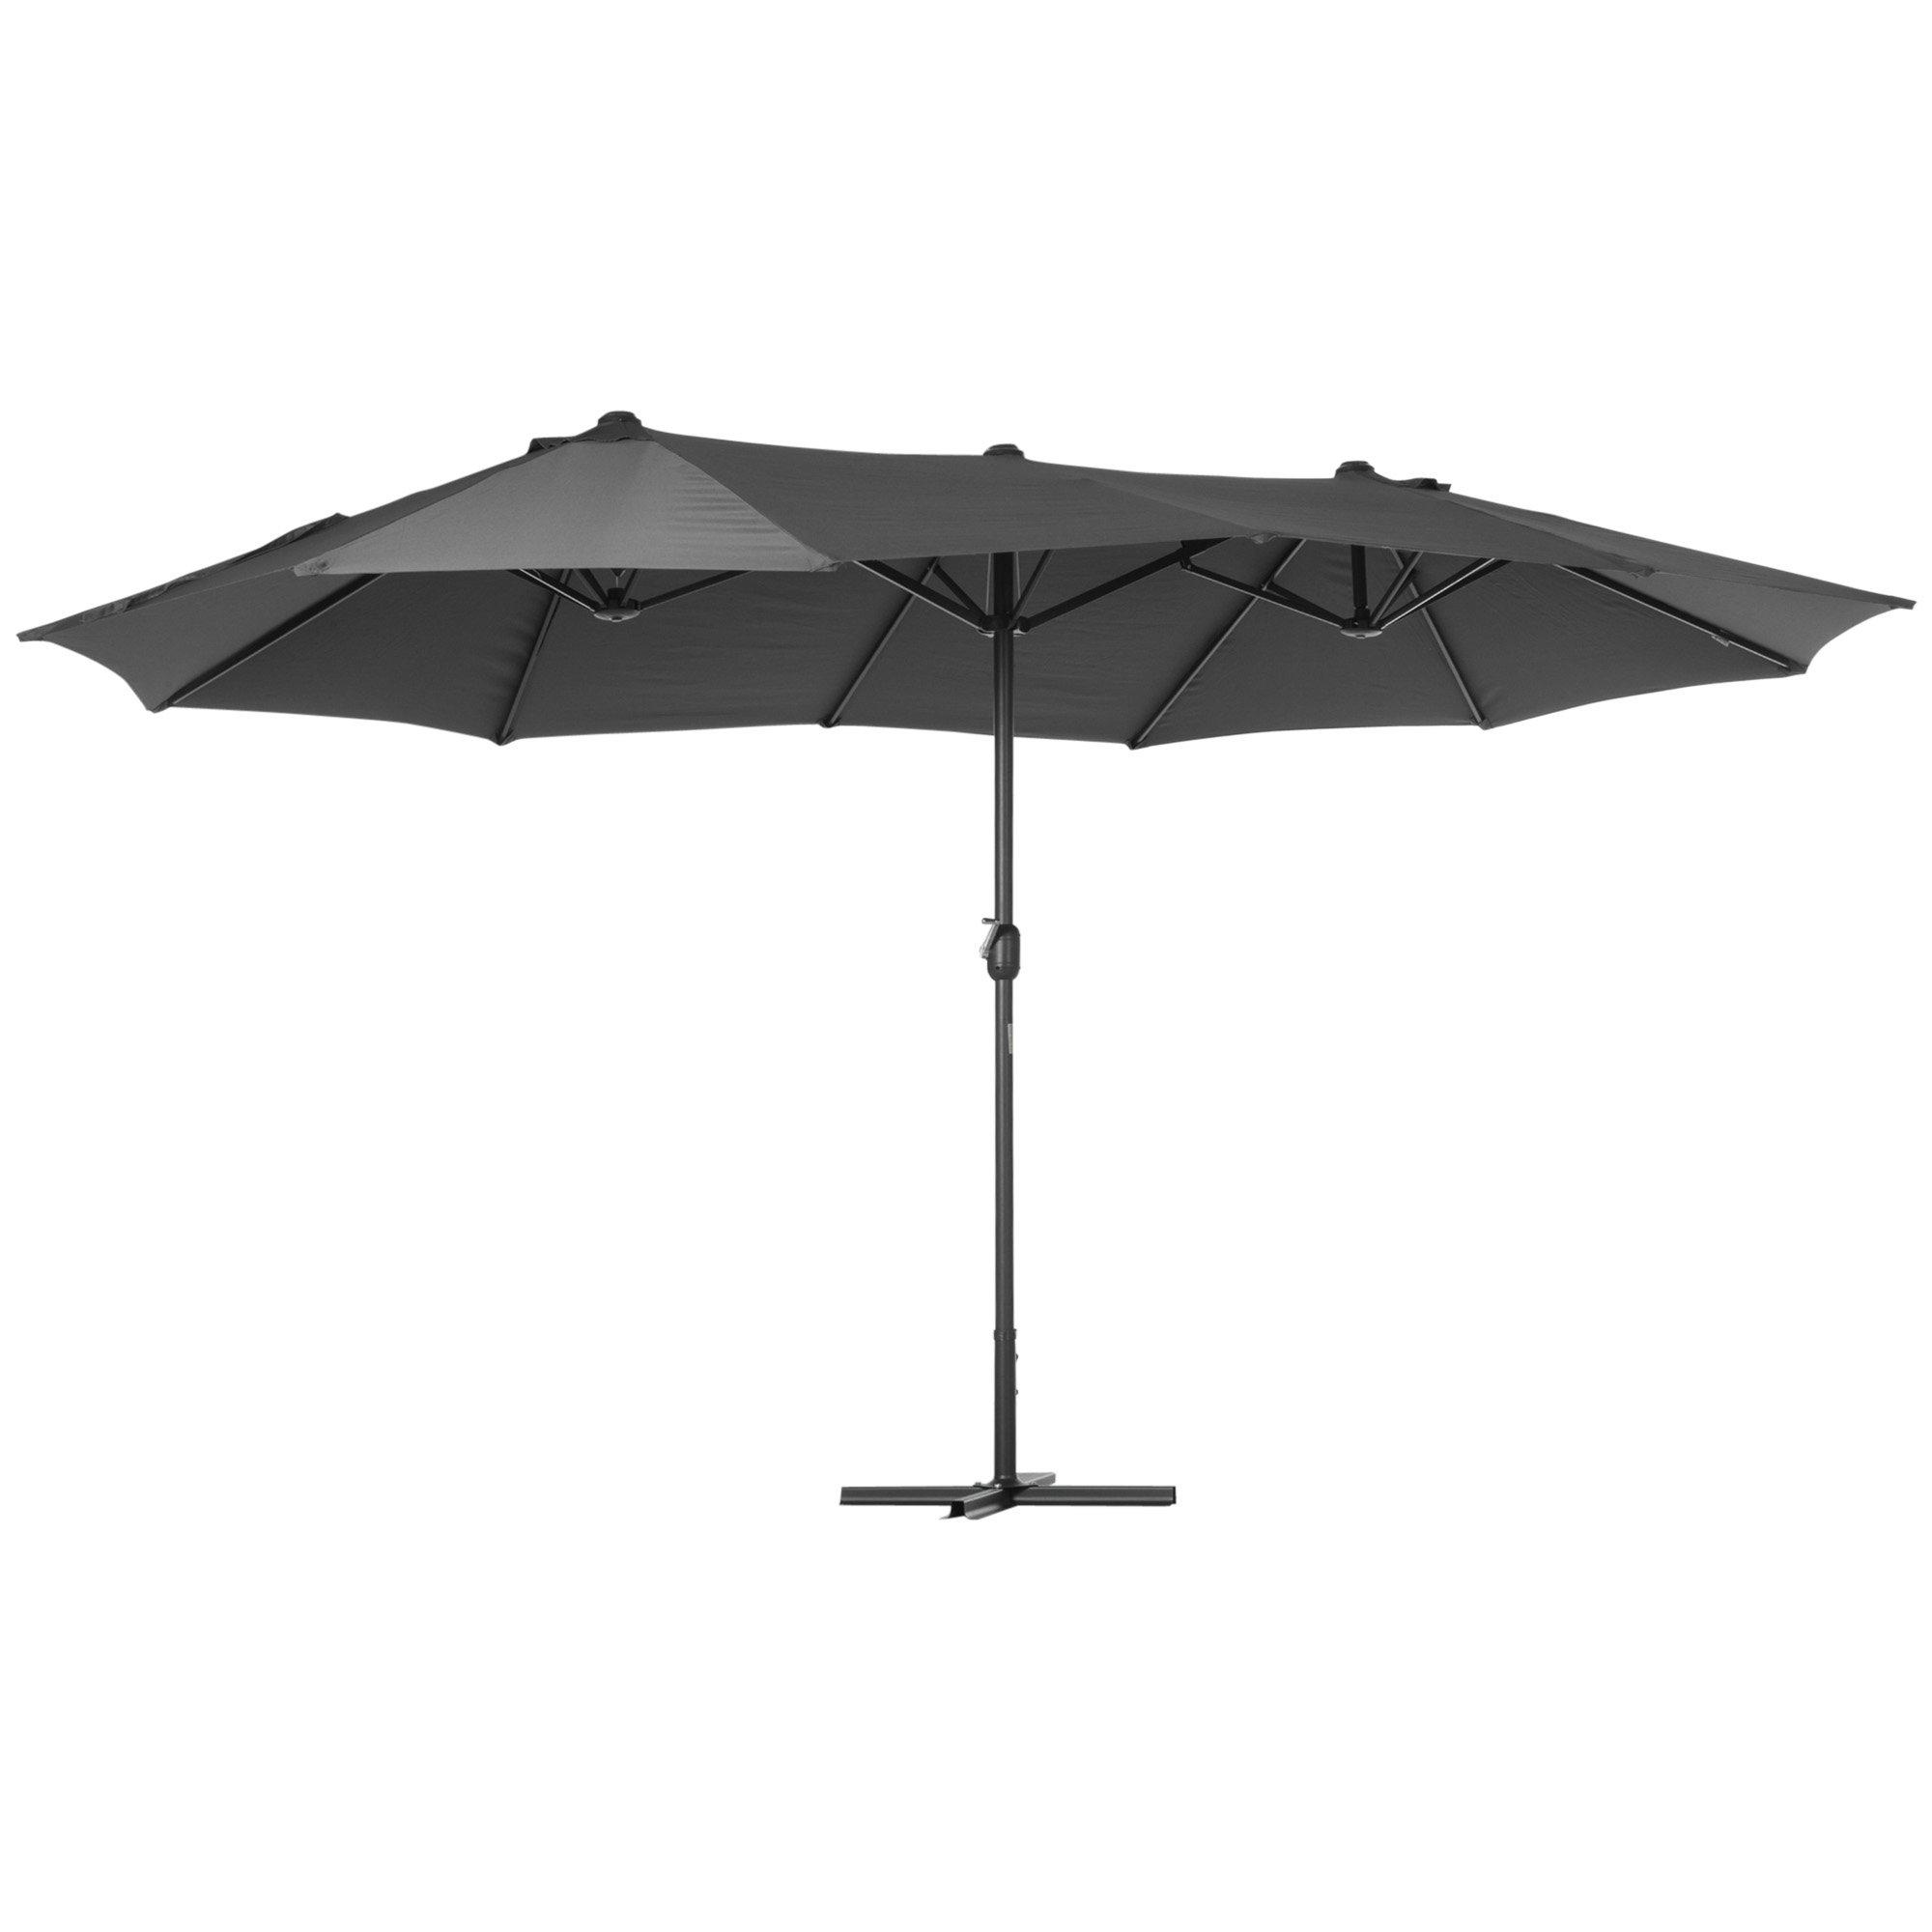 4.6M Garden Patio Umbrella Canopy Parasol Sun Shade with Base